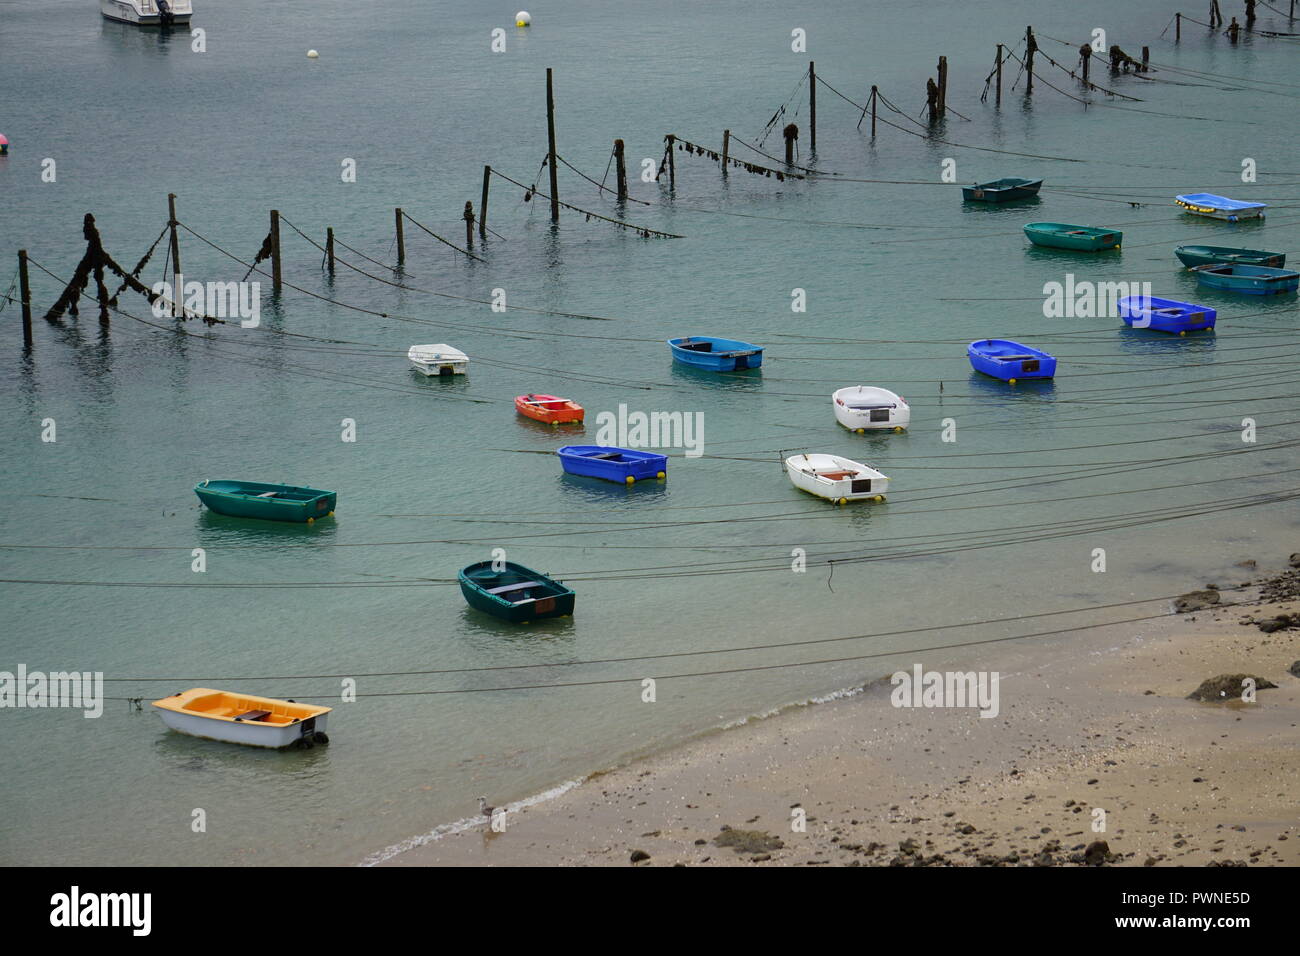 Attaché petits bateaux colorés à partir de montants en bois flottant sur l'océan à marée basse en Bretagne, France Banque D'Images